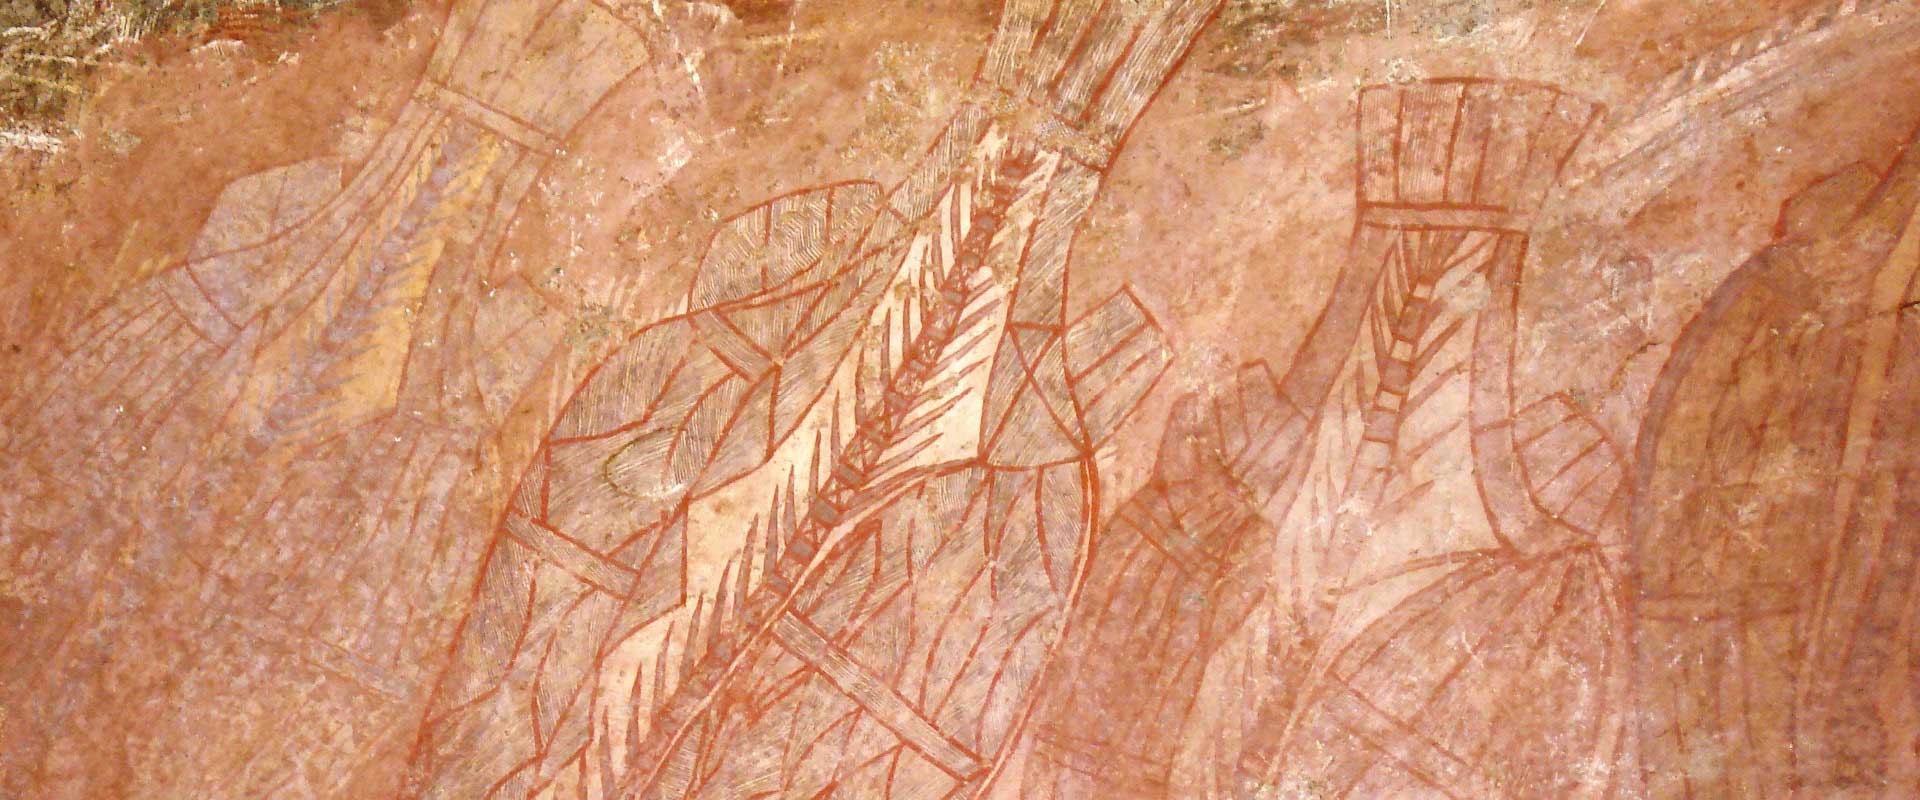 Indigenous rock art ubirr kakadu nt